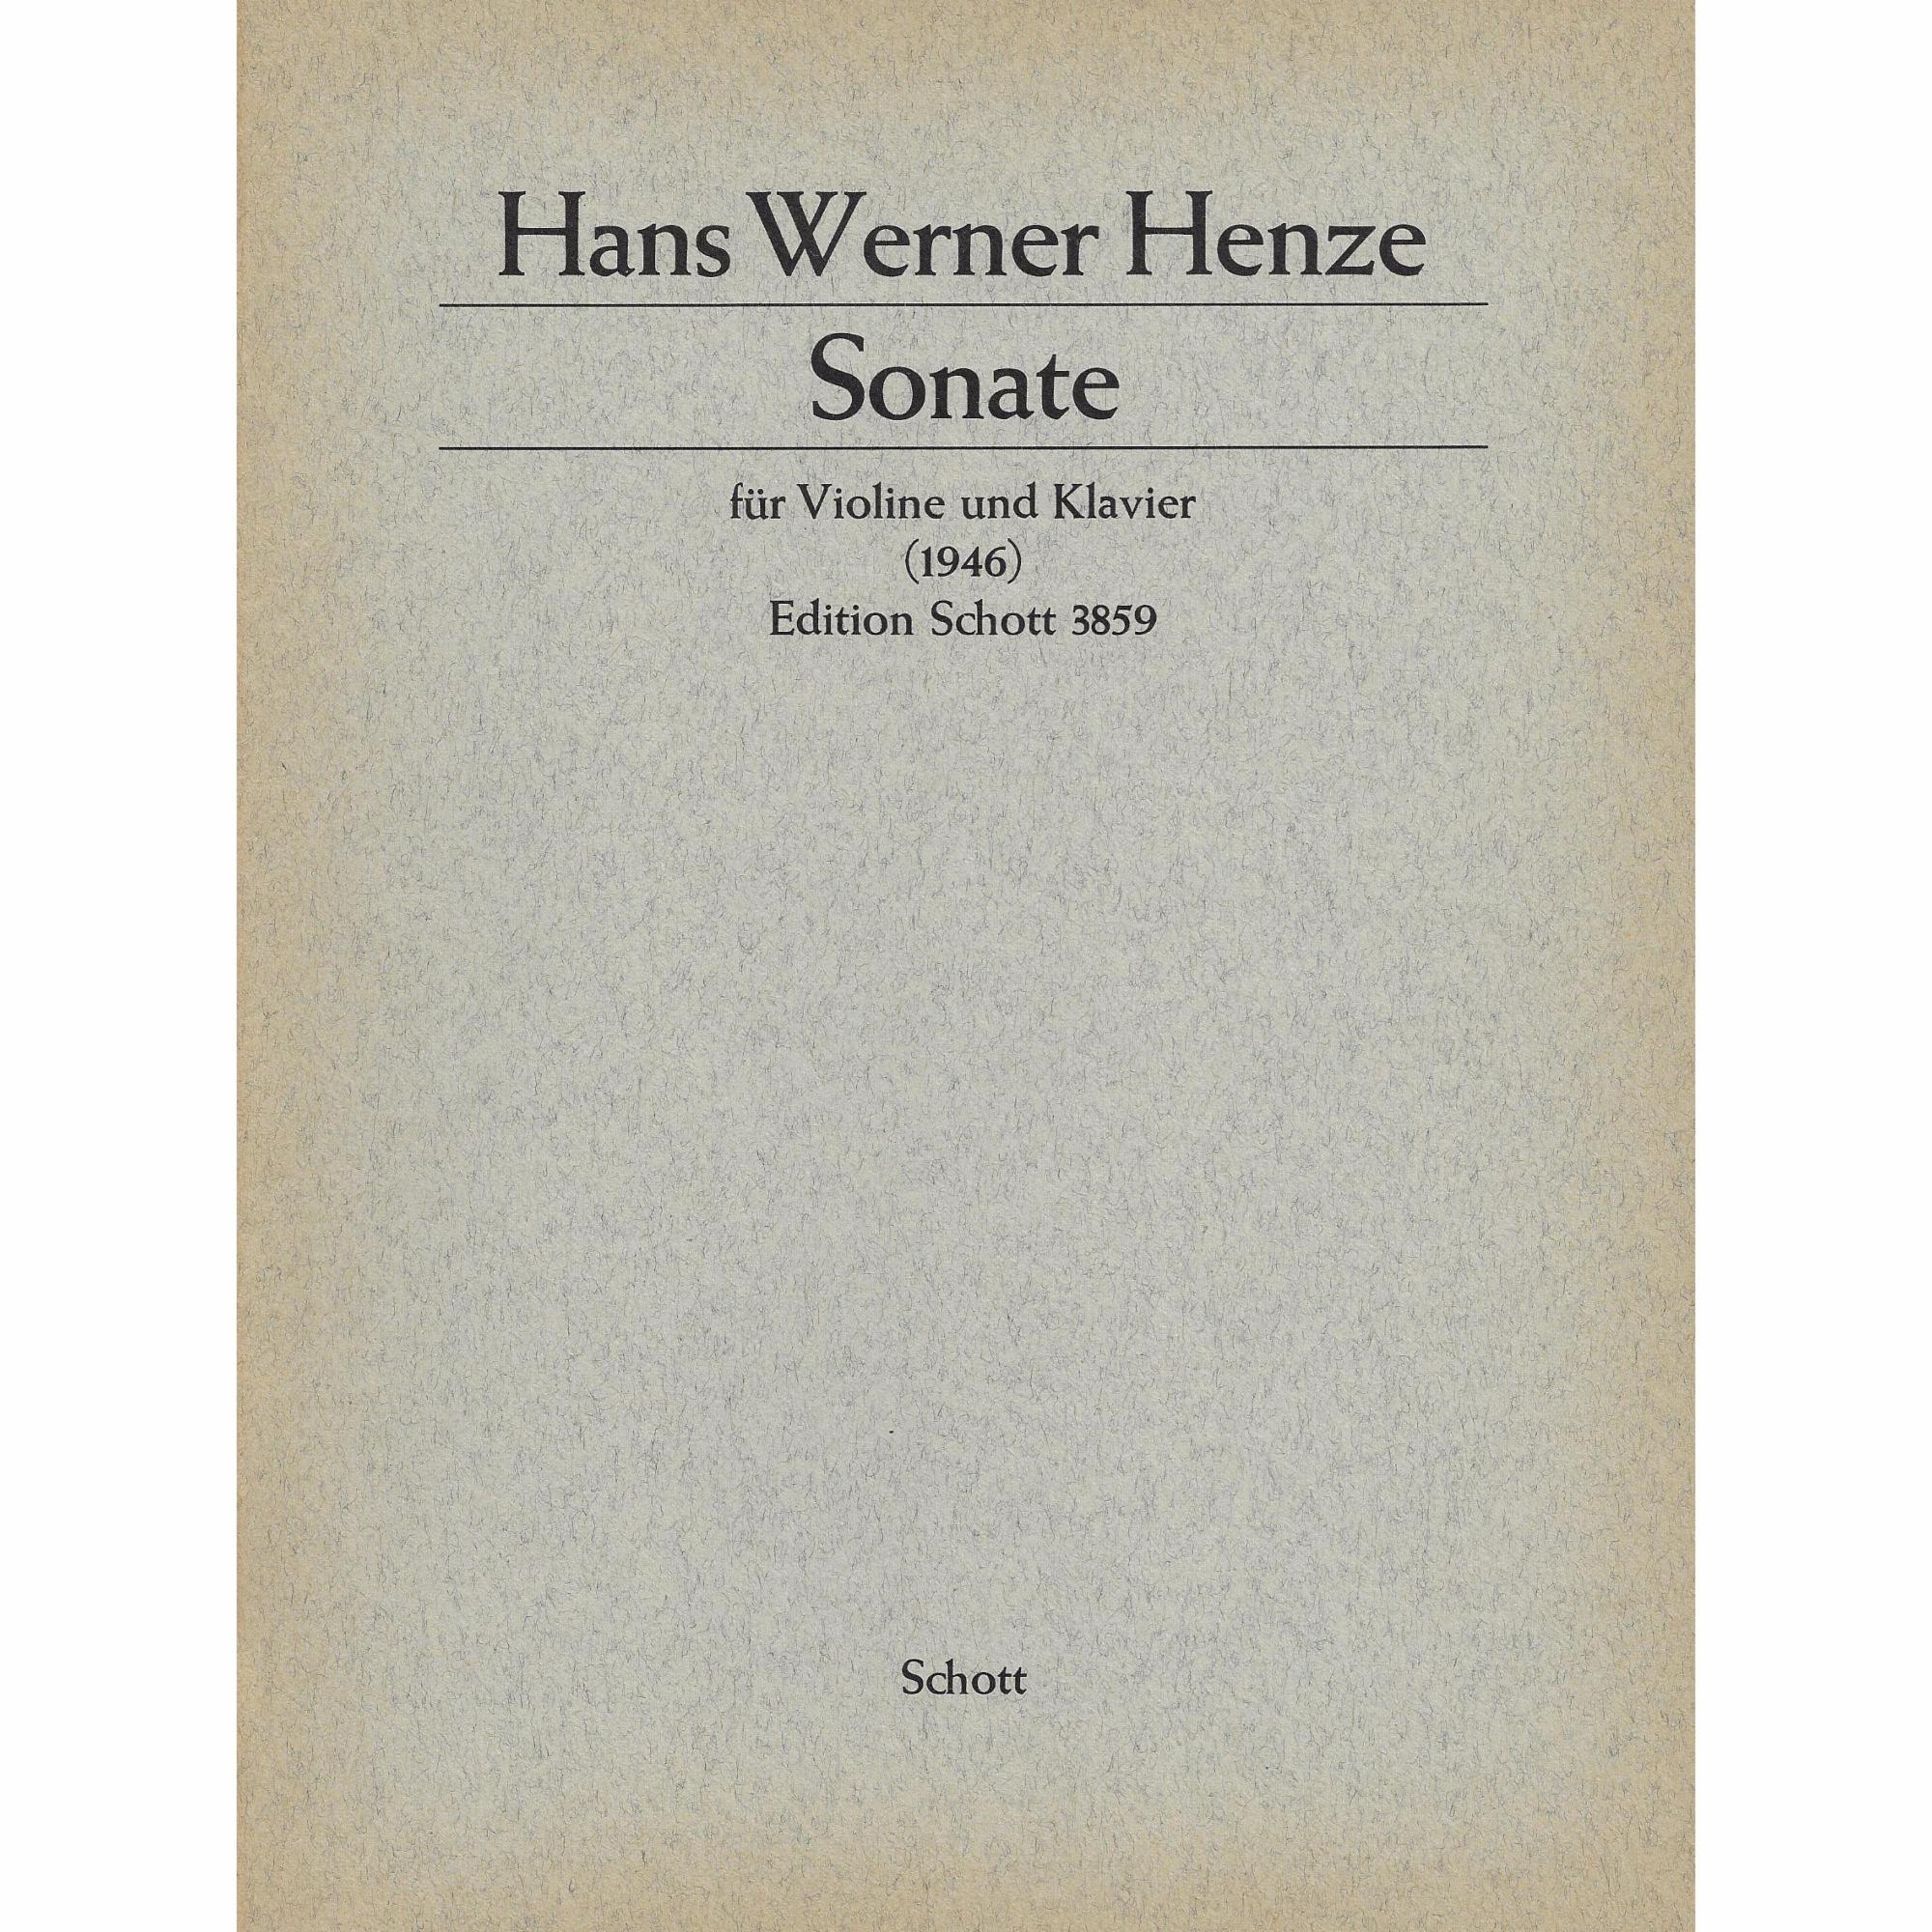 Henze -- Sonata for Violin and Piano